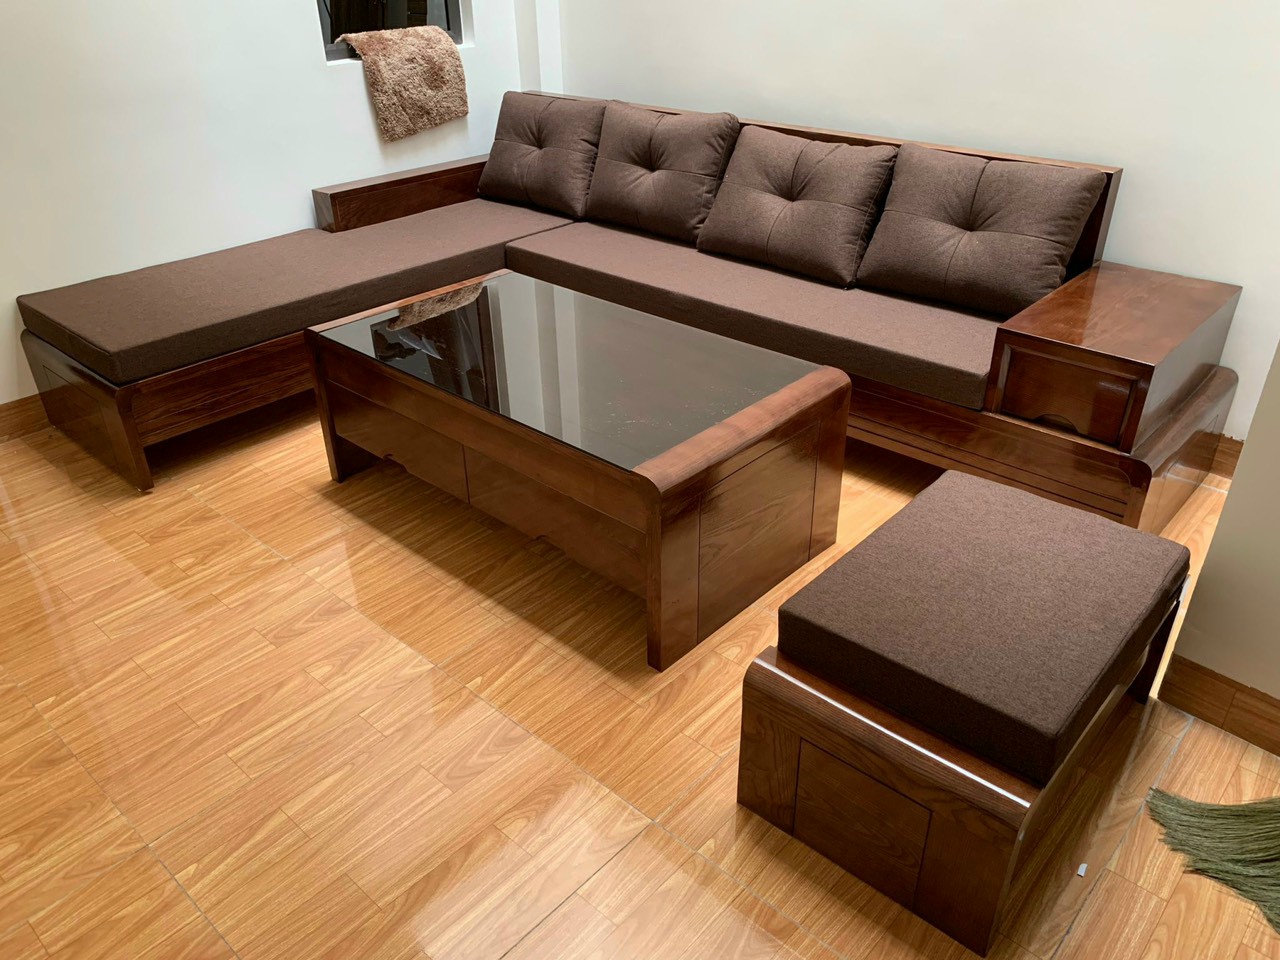 Ghế sofa gỗ đẹp là lựa chọn hoàn hảo cho không gian cổ điển, gần gũi với thiên nhiên